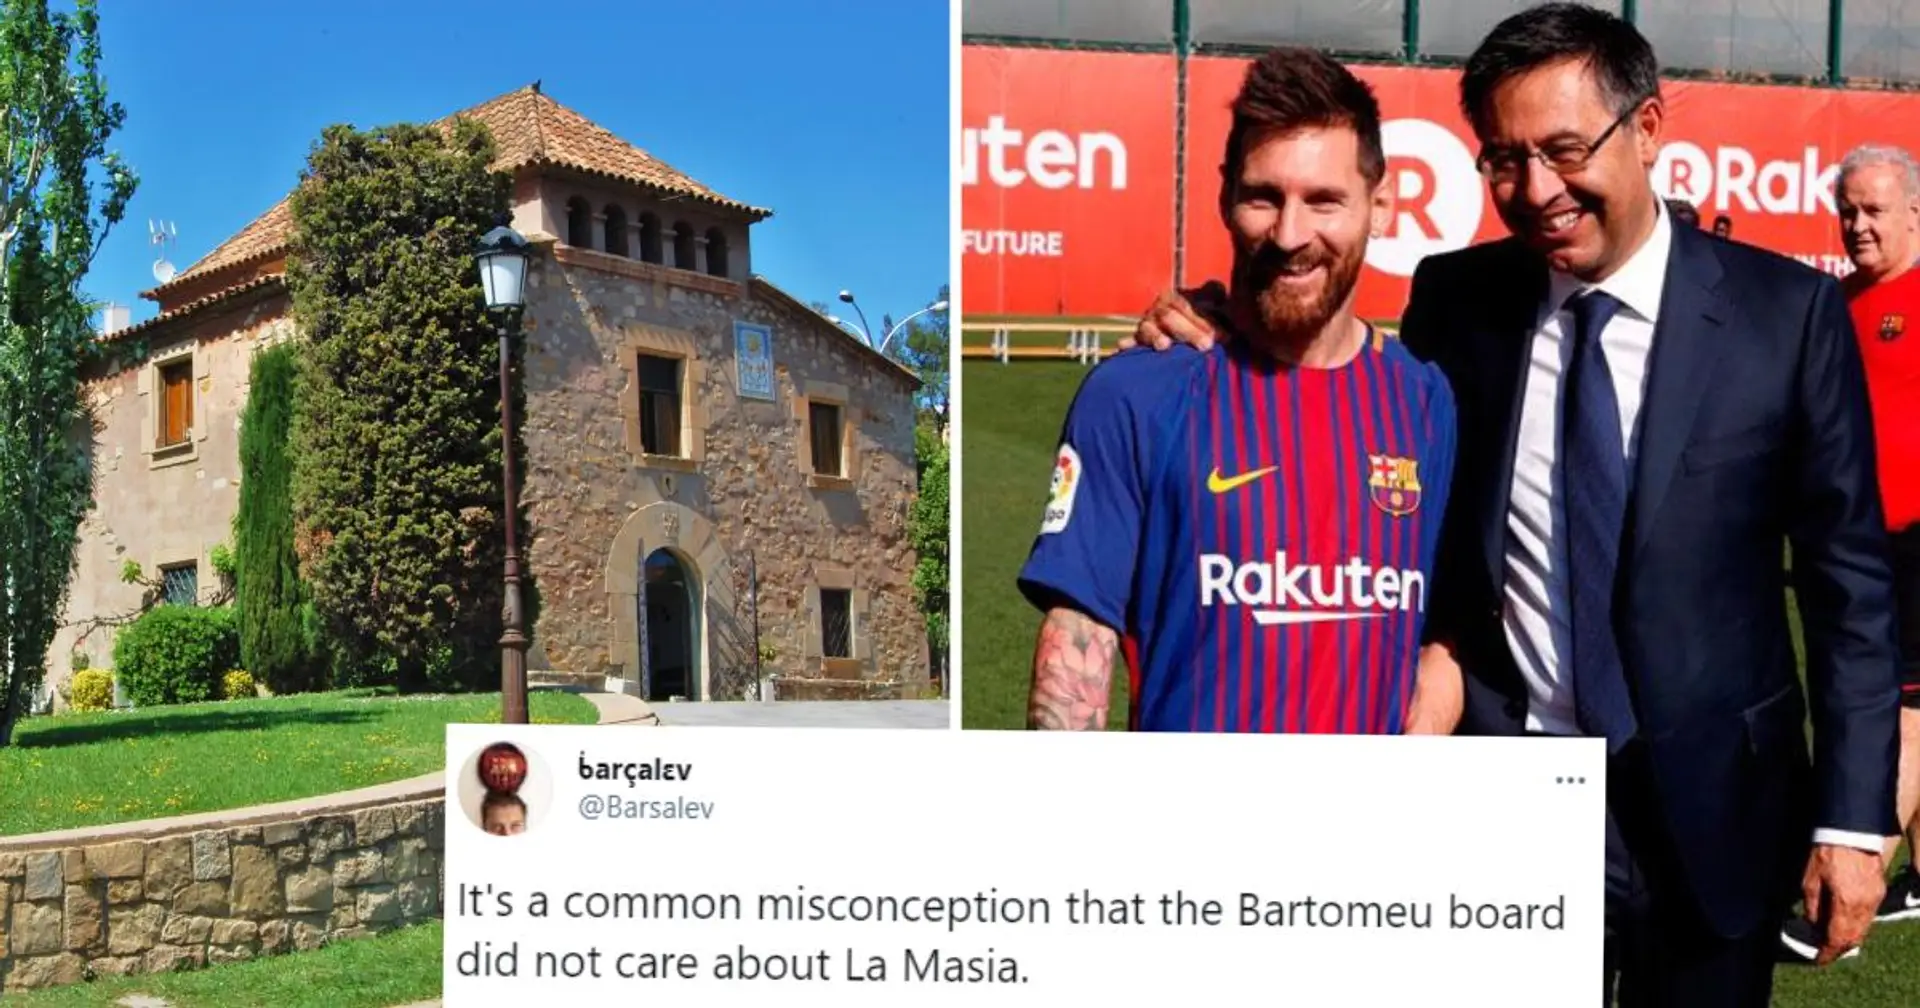 ''C'est une idée fausse que Bartomeu ne se souciait pas de La Masia'': un fan du Barça explique l'écart dans la production de l'académie, il termine sur une note positive